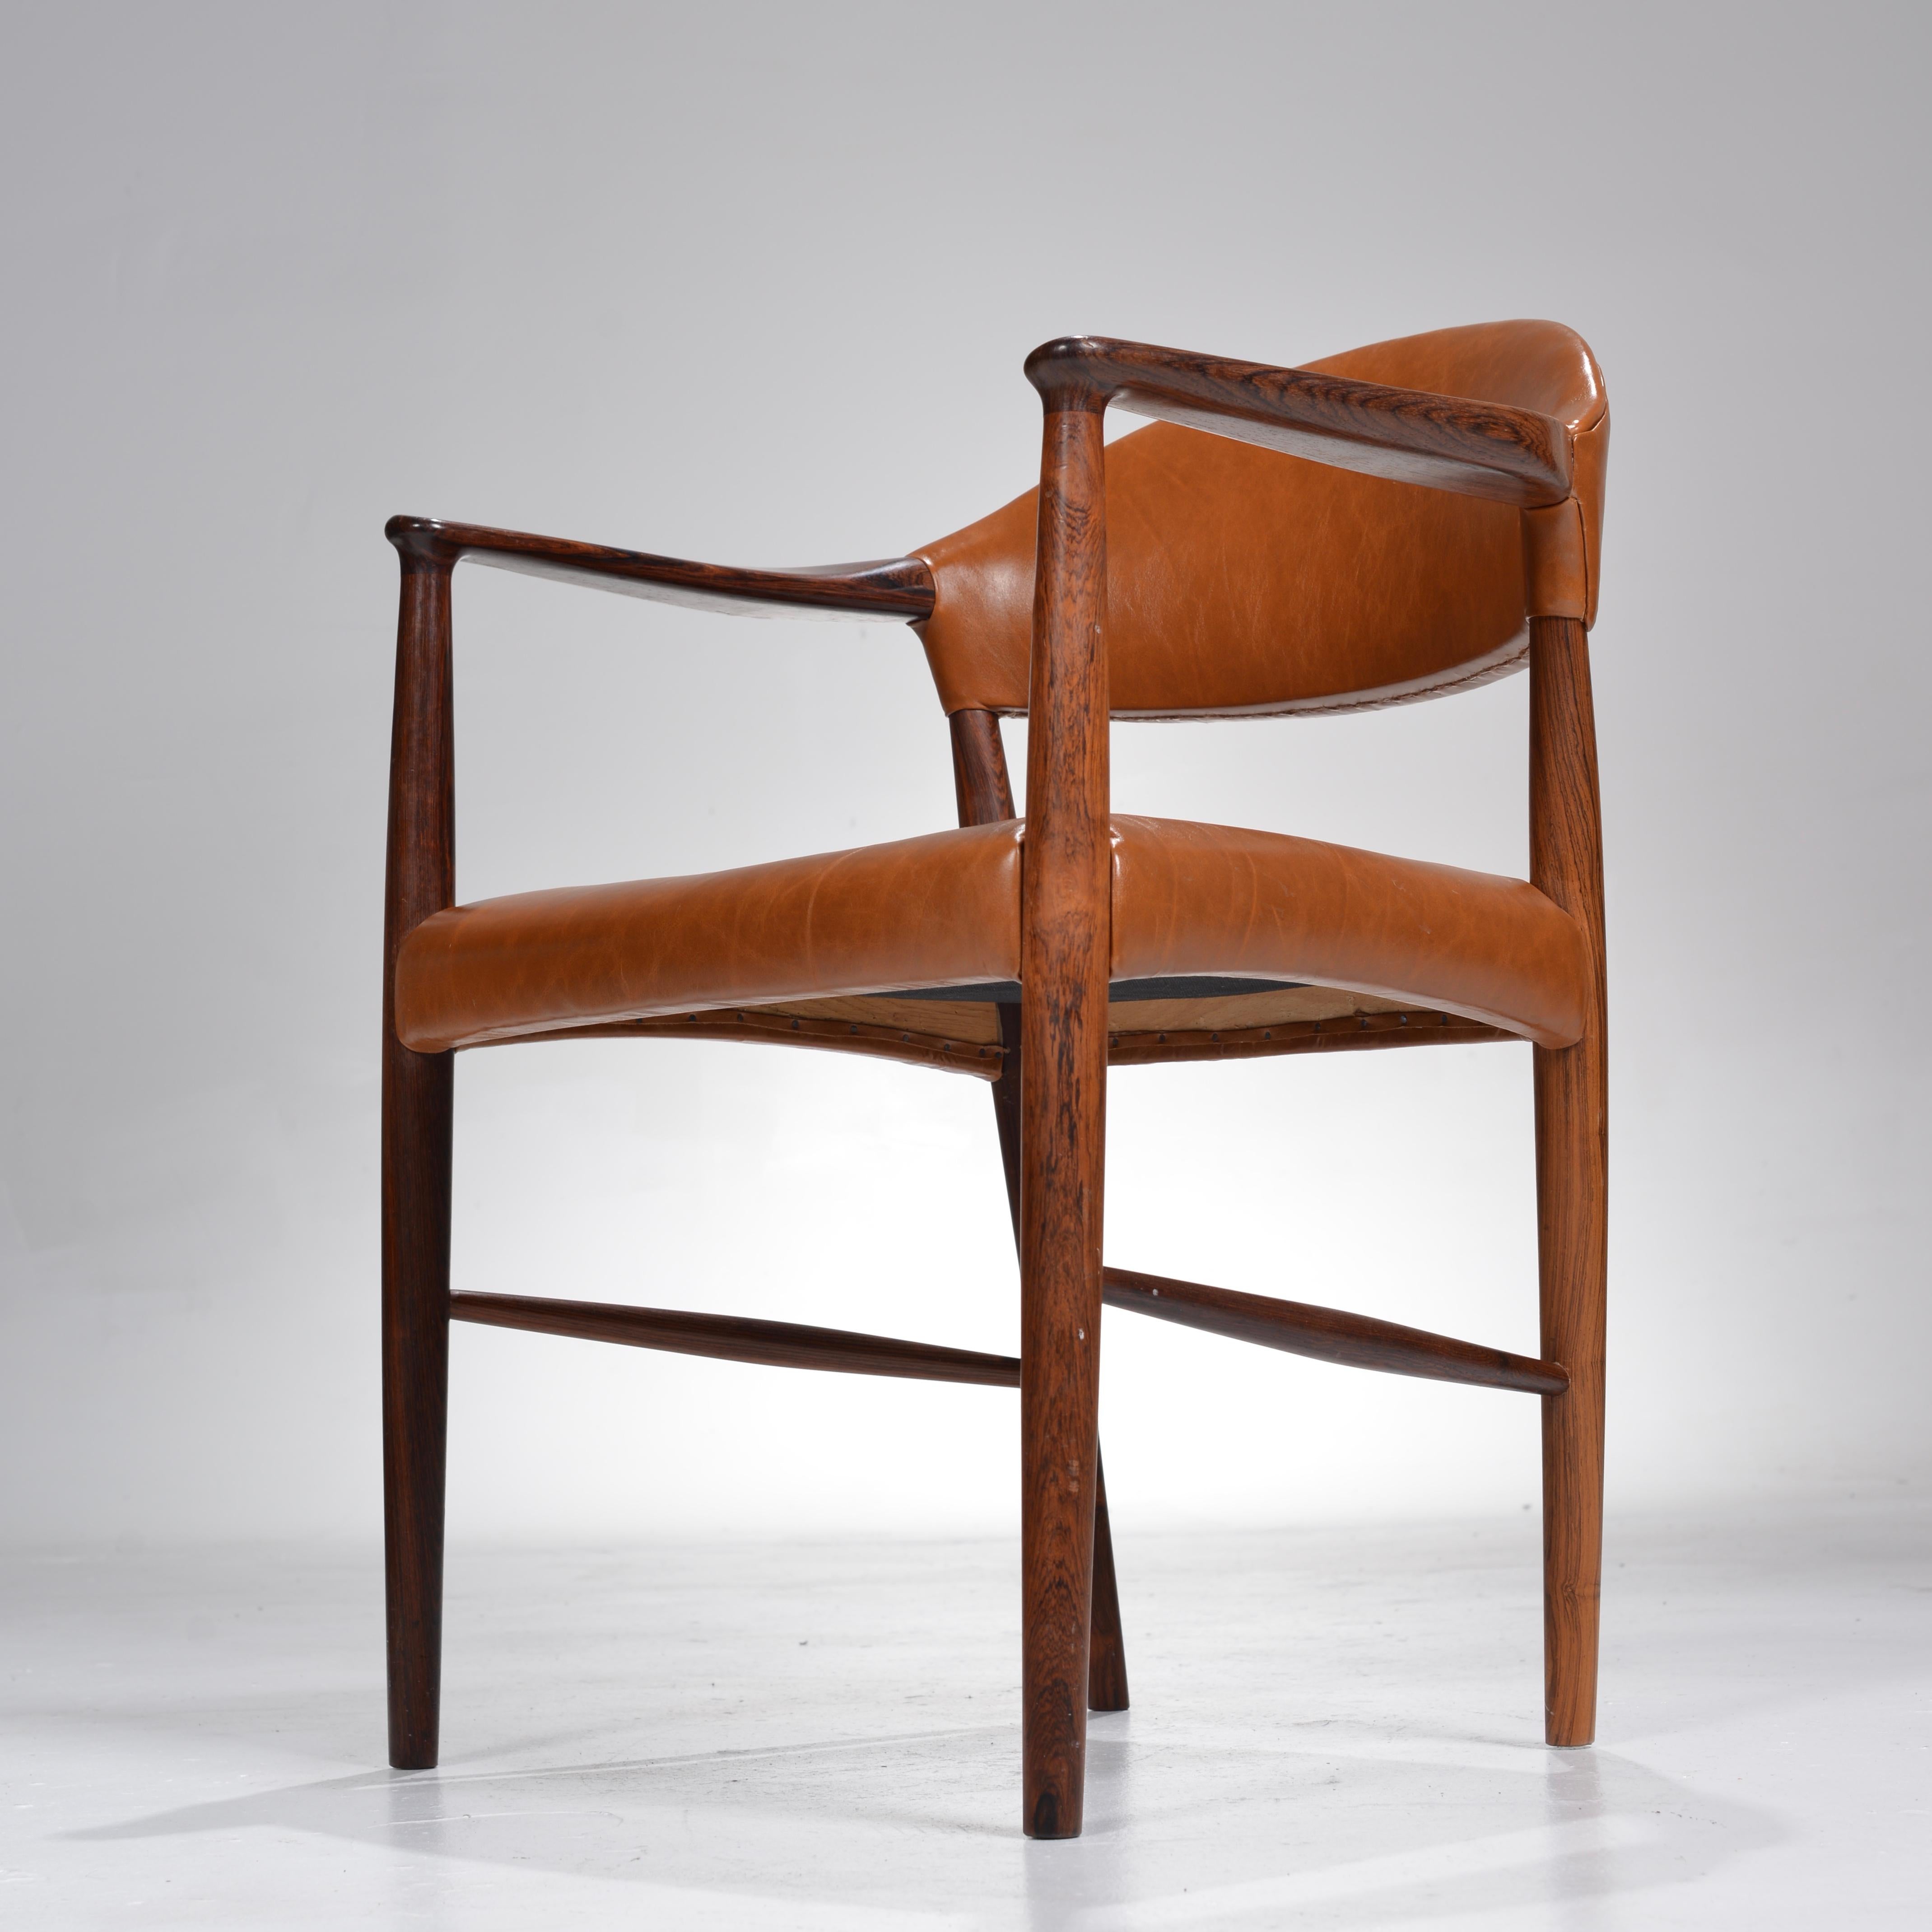 Il s'agit de rares fauteuils en bois de rose réalisés par Enjer Larsen et Aksel Bender Madsen pour Larsen + Madsen, vers 1955. Entièrement restauré dans un beau cuir italien. Prévoyez 3 à 4 semaines si vous souhaitez un service de rembourrage. Le